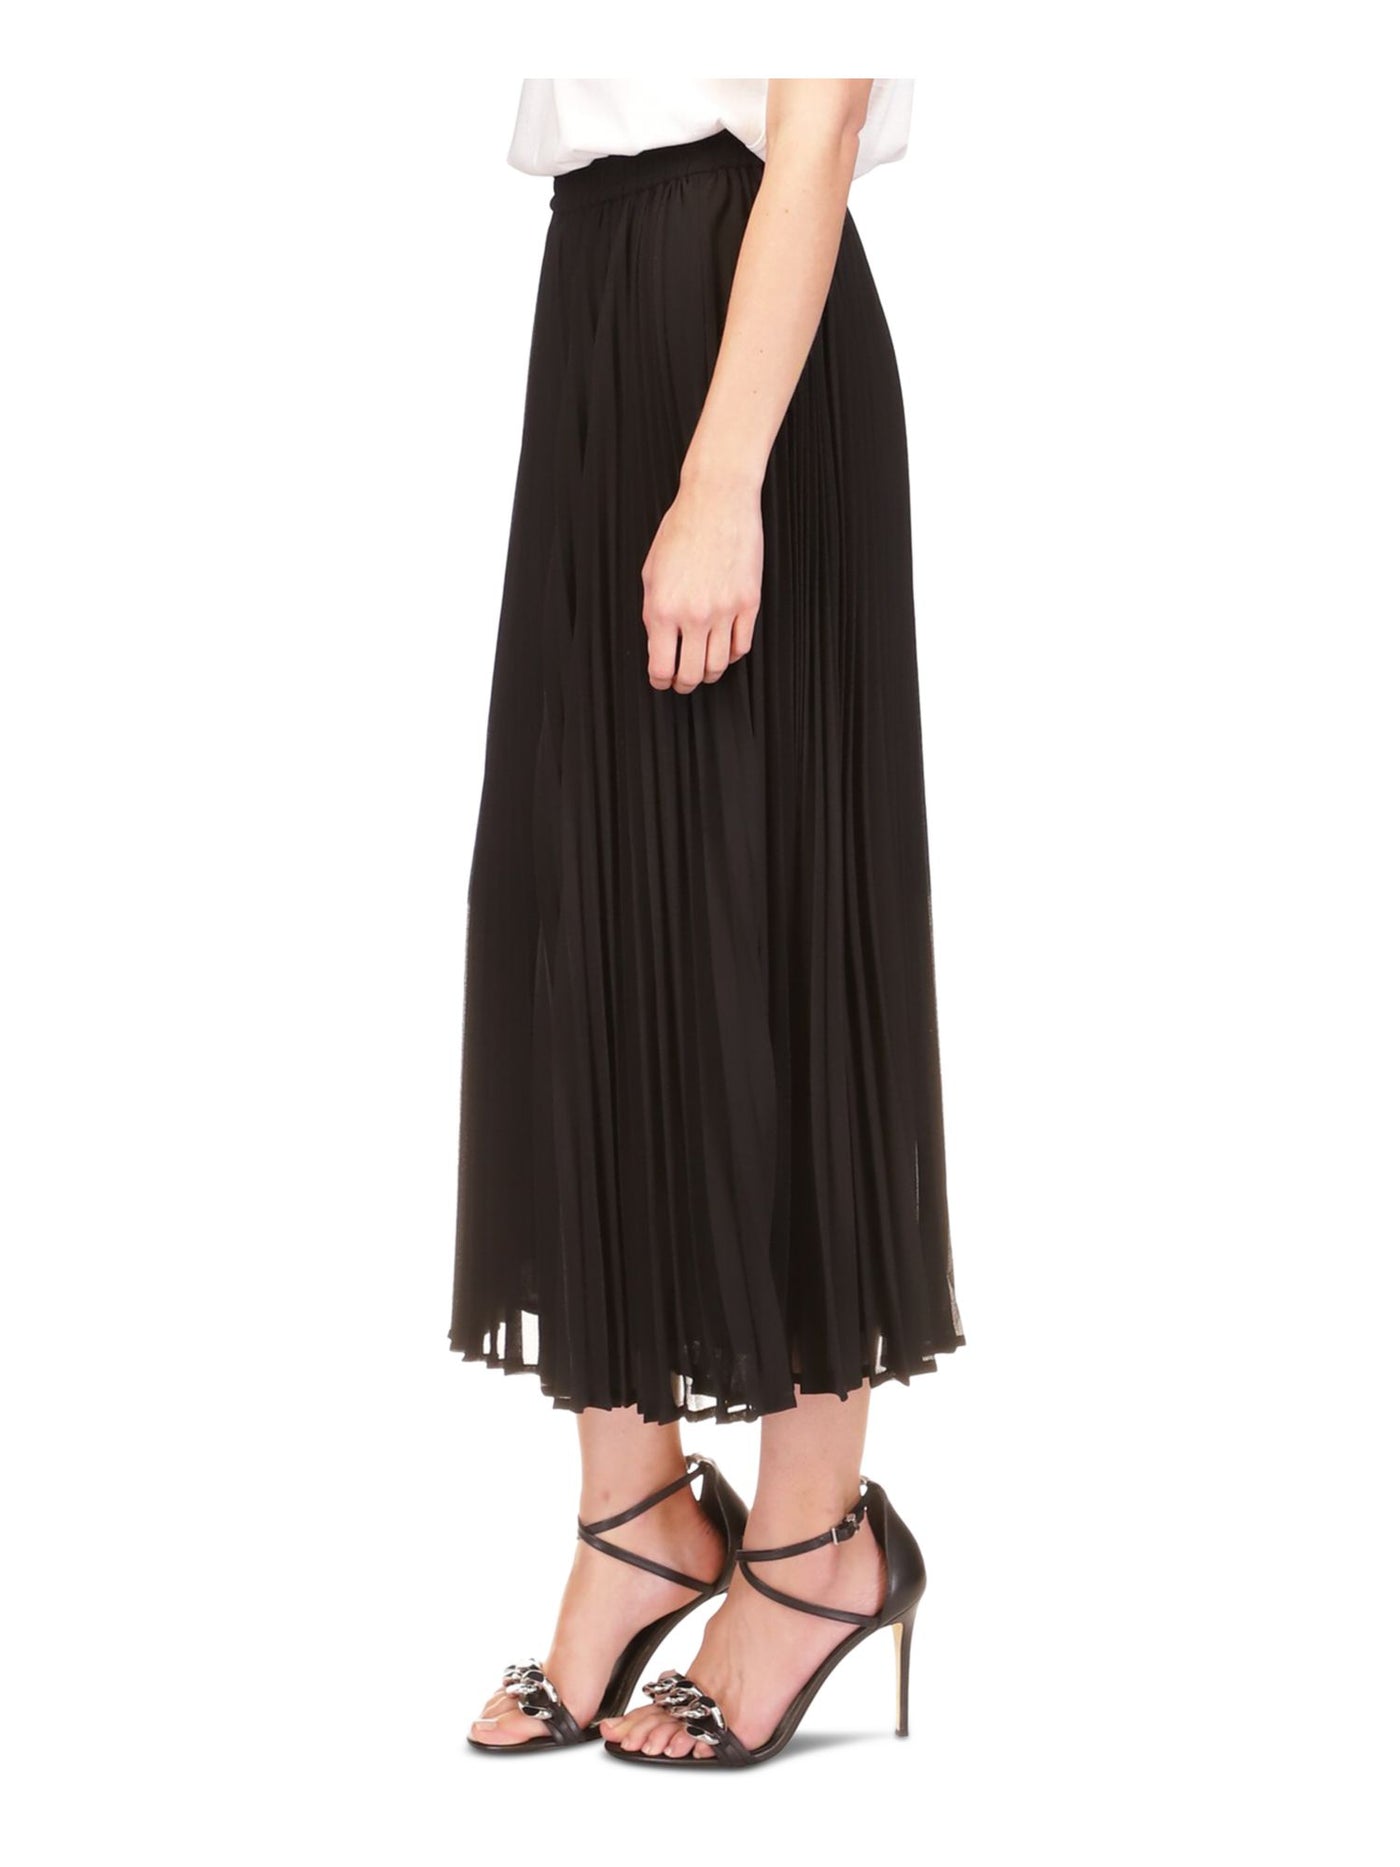 MICHAEL MICHAEL KORS Womens Black Lined Elastic Waist Pull-on Midi Wear To Work Pleated Skirt S